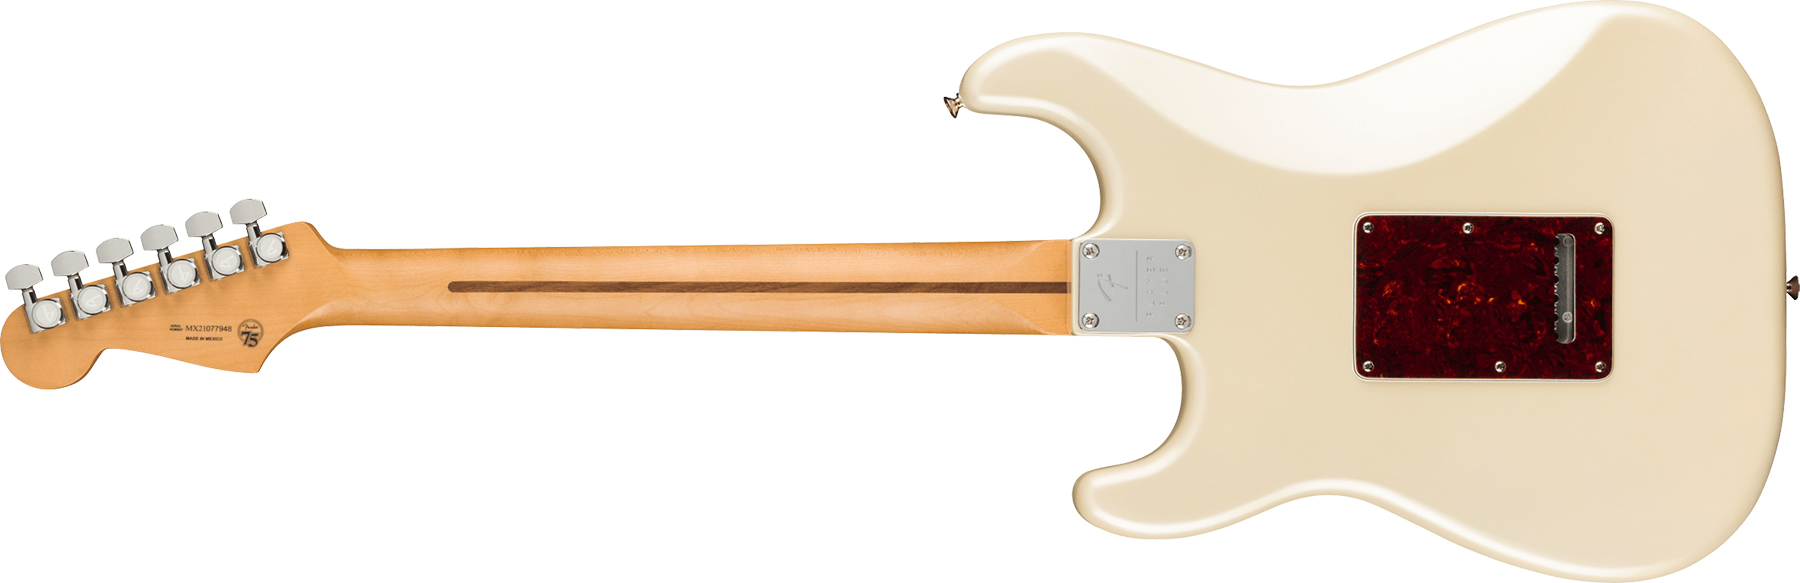 Fender Strat Player Plus Lh Mex Gaucher 3s Trem Mn - Olympic Pearl - Guitarra electrica para zurdos - Variation 1